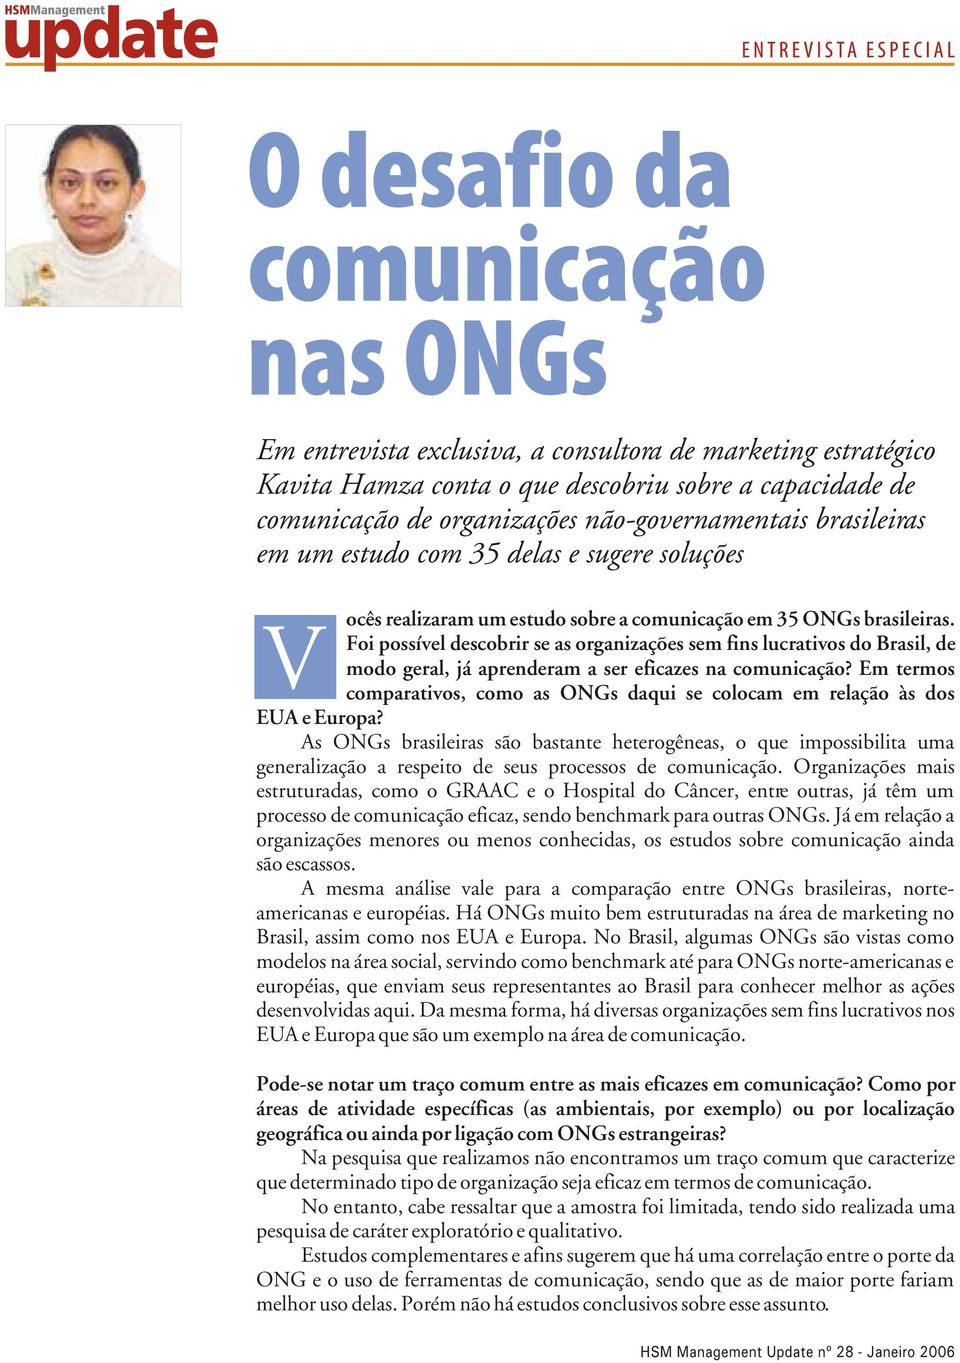 Foi possível descobrir se as organizações sem fins lucrativos do Brasil, de modo geral, já aprenderam a ser eficazes na comunicação?